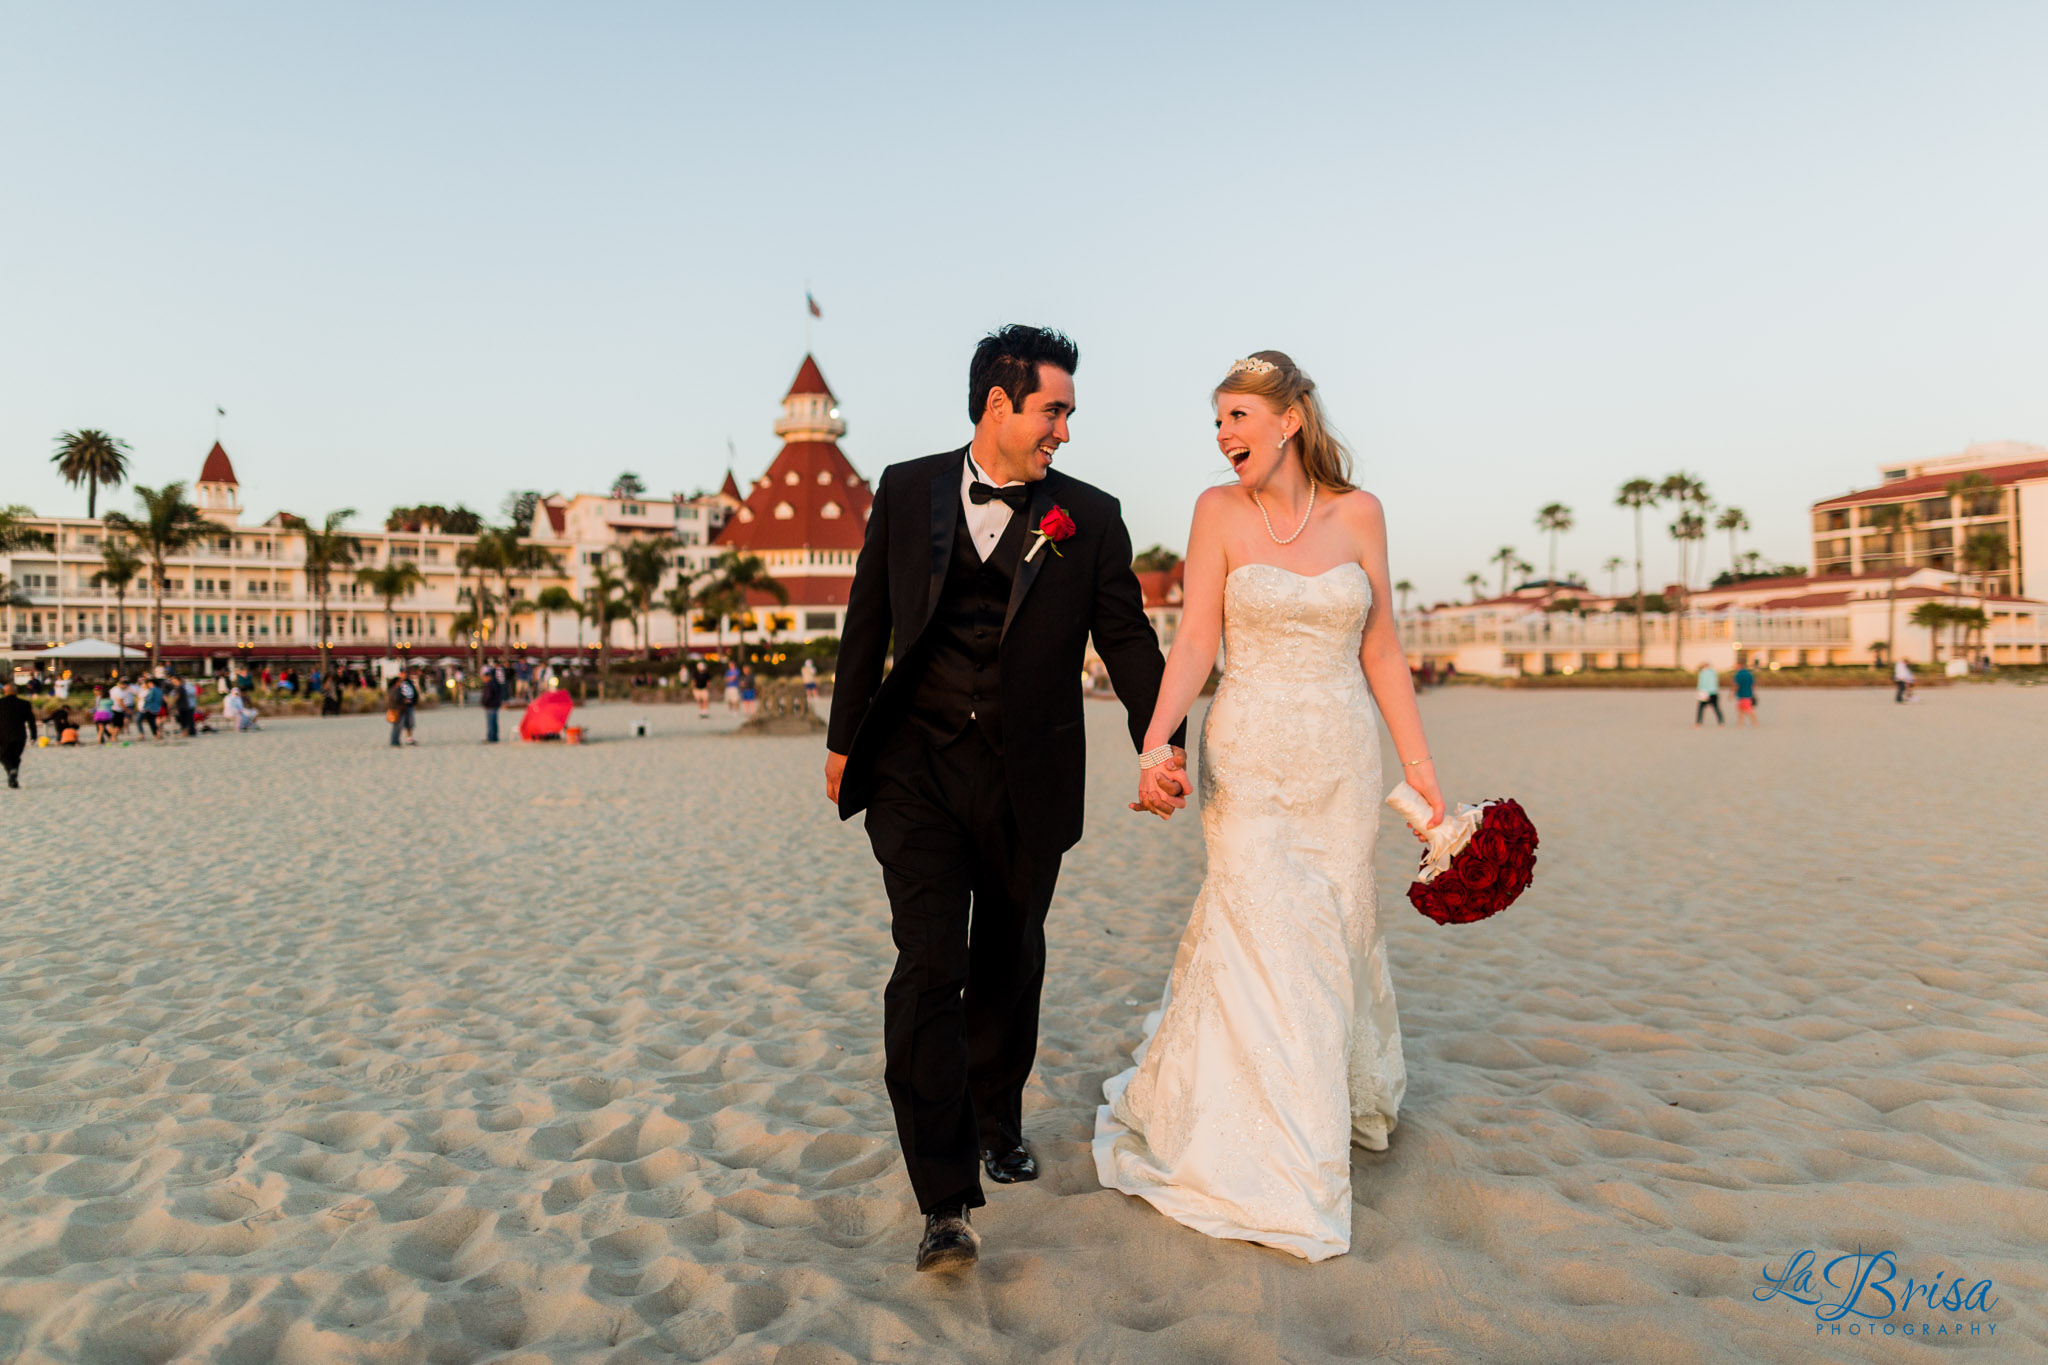 Rachel & Tyler Preview | Wedding Photography | Coronado, CA | Chris Hsieh